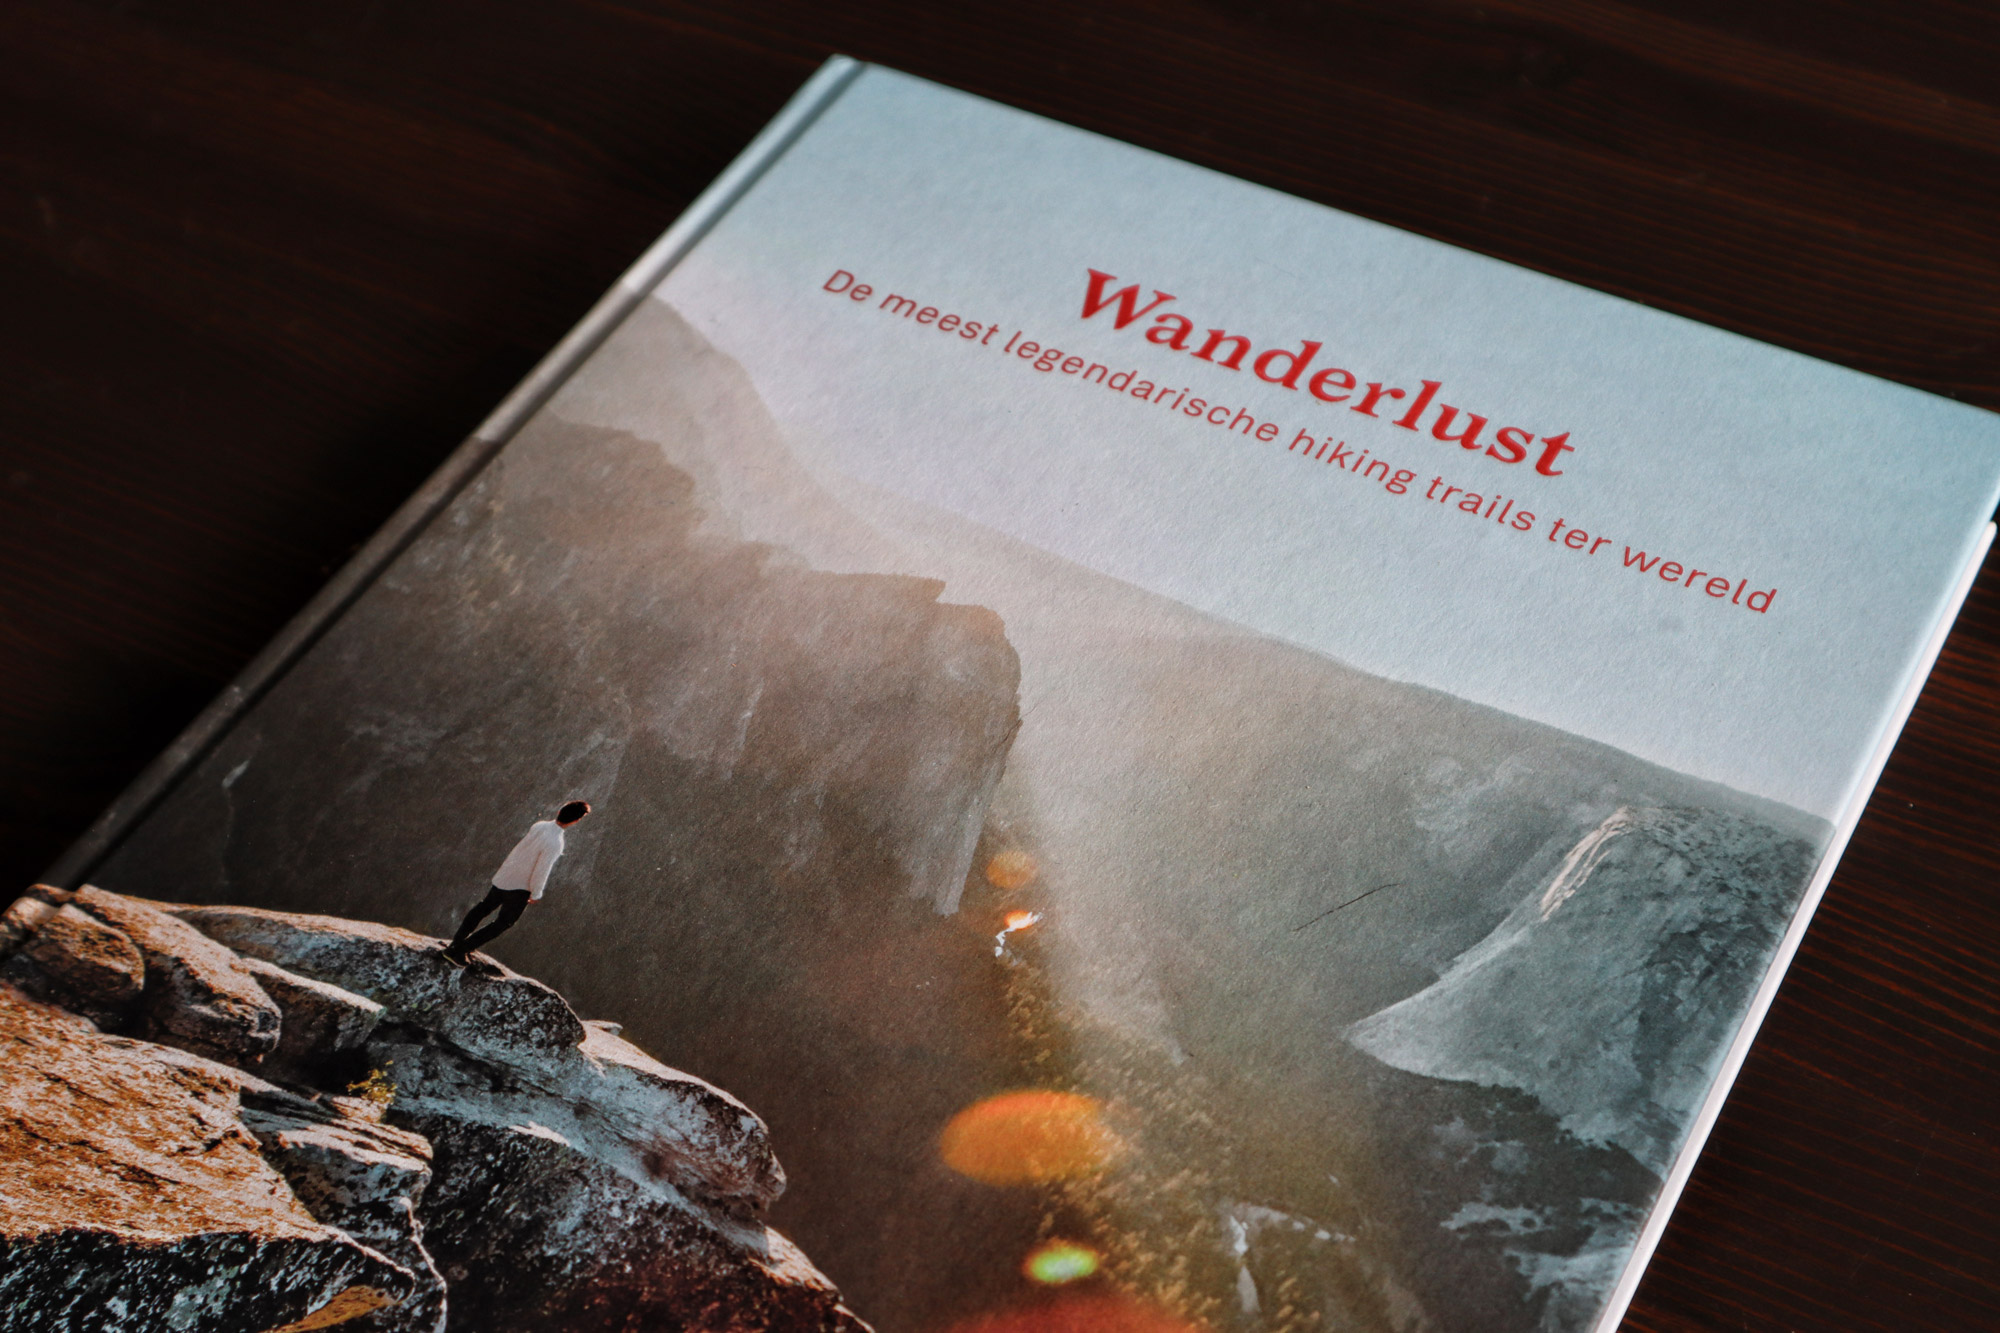 Review: Wanderlust, Gestalten